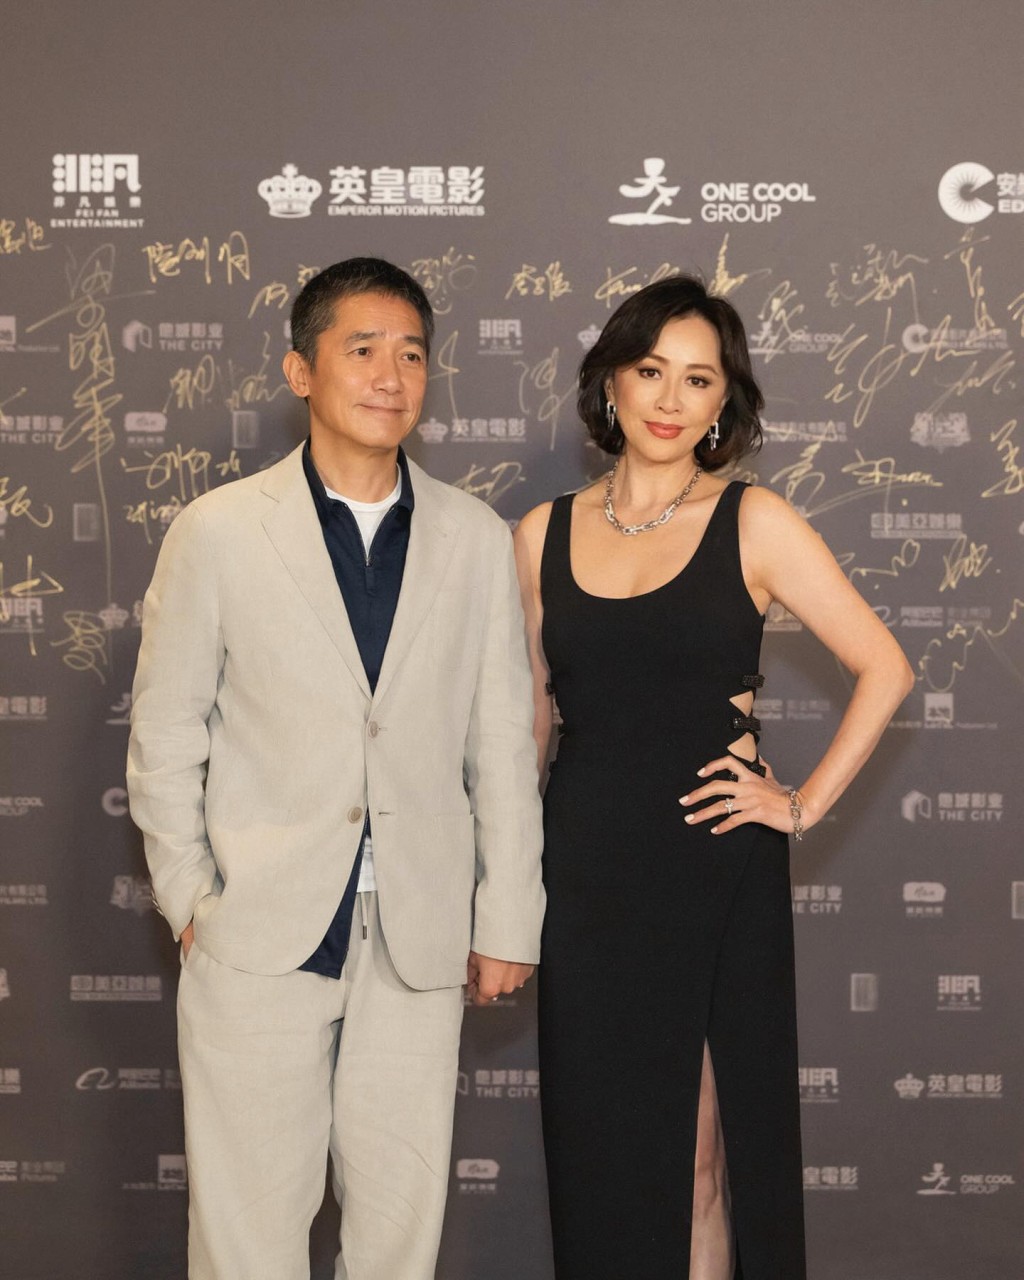 梁朝伟在导演会颁奖礼上凭《金手指》夺得“最佳男主角”， ​刘嘉玲陪伴老公出席外，还担任颁奖嘉宾。  ​